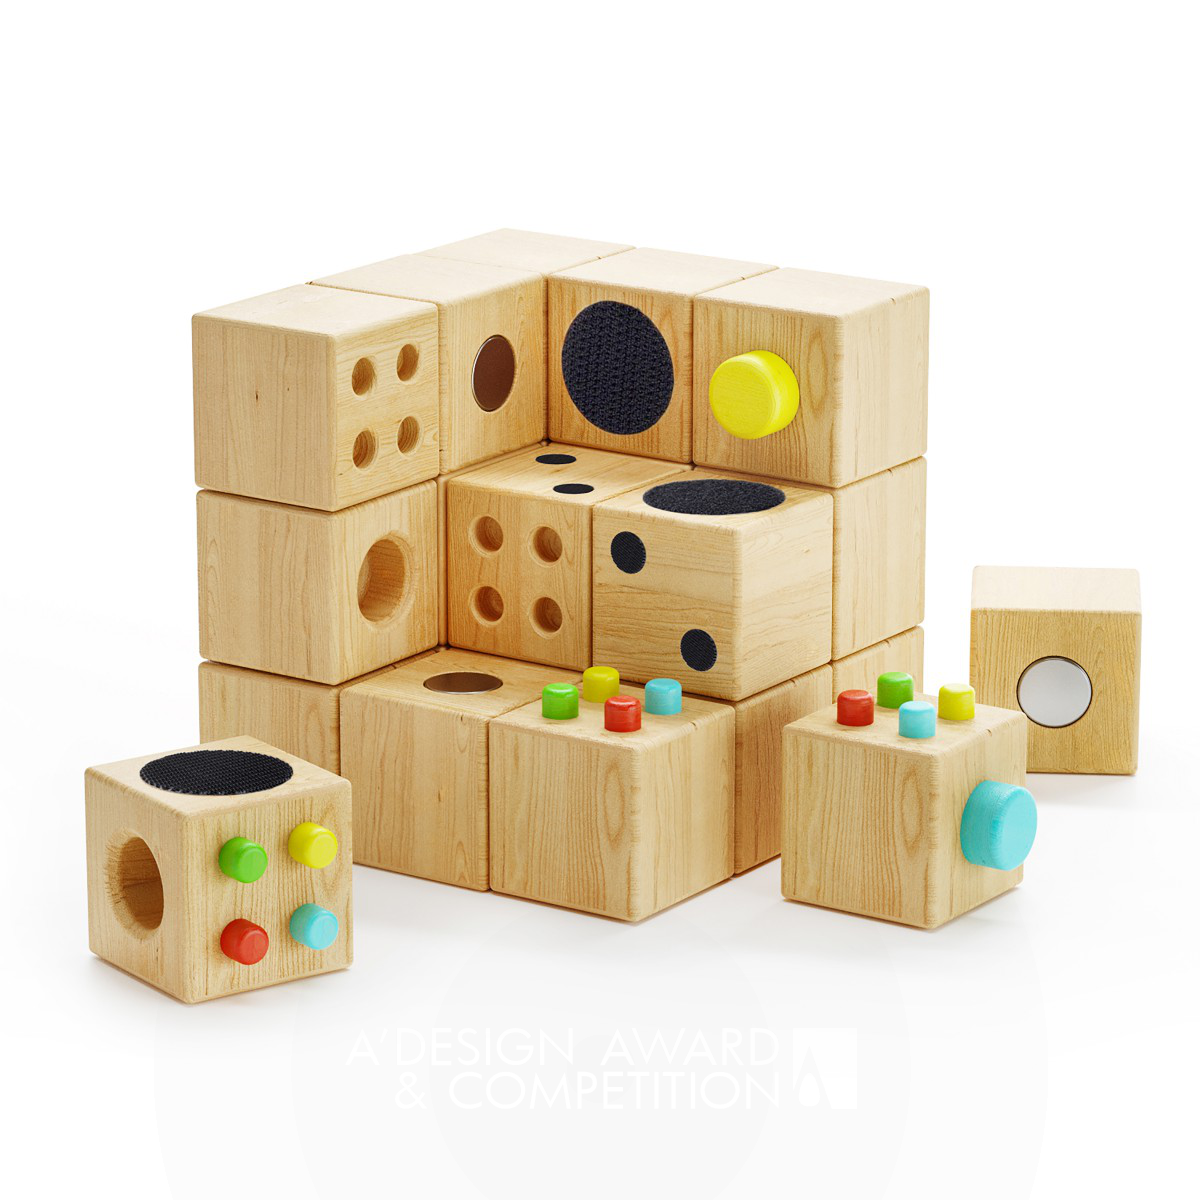 전통적인 장난감의 혁신: Cubecor